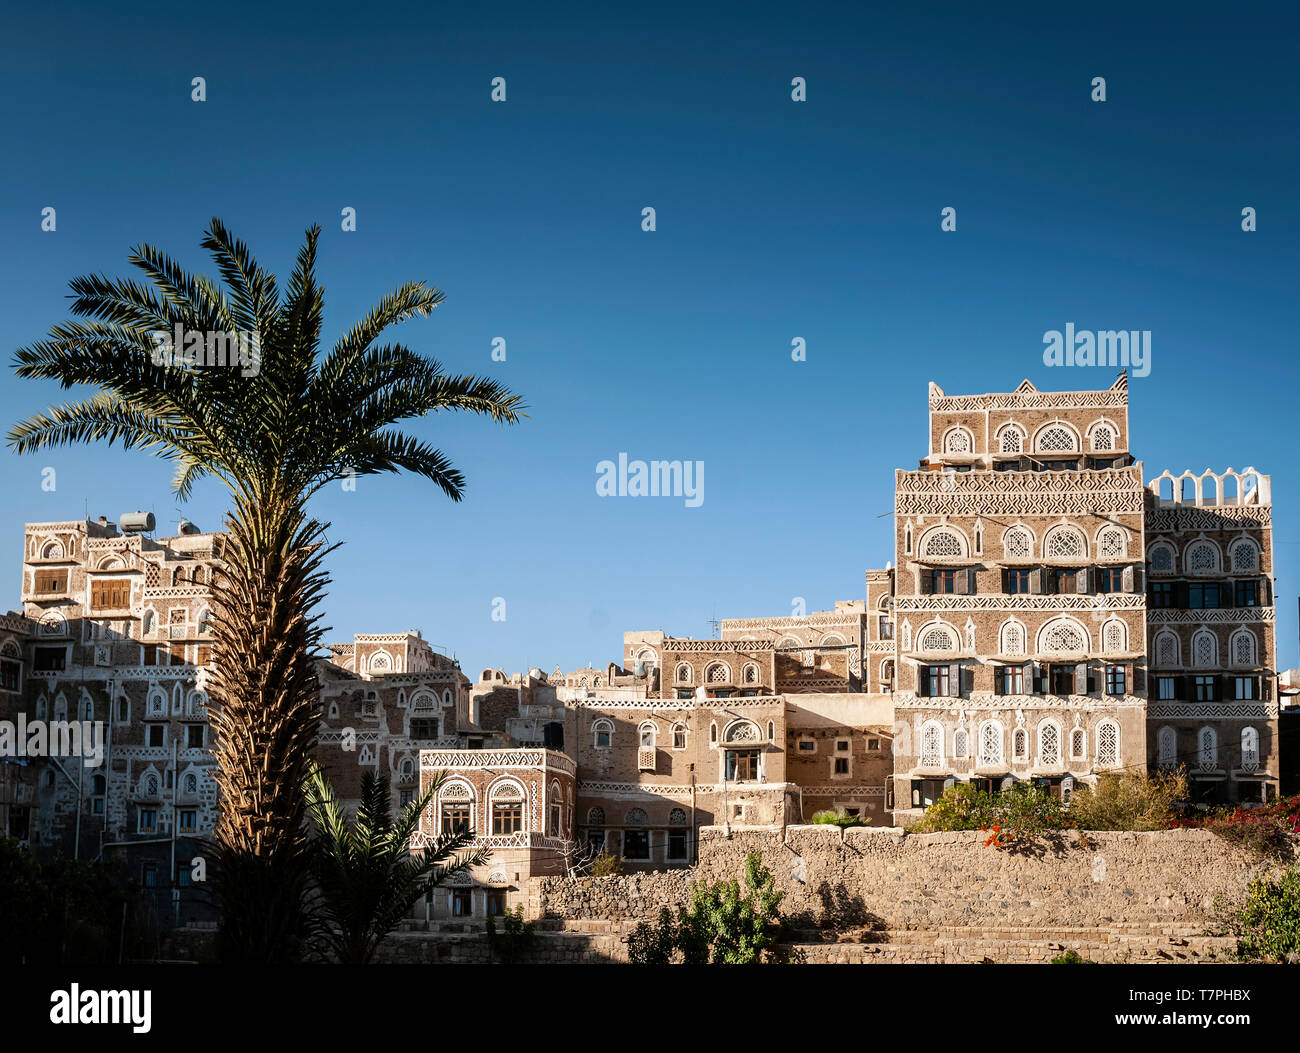 Famoso e tradizionale architettura degli edifici del patrimonio vista in sanaa città vecchia in Yemen Foto Stock